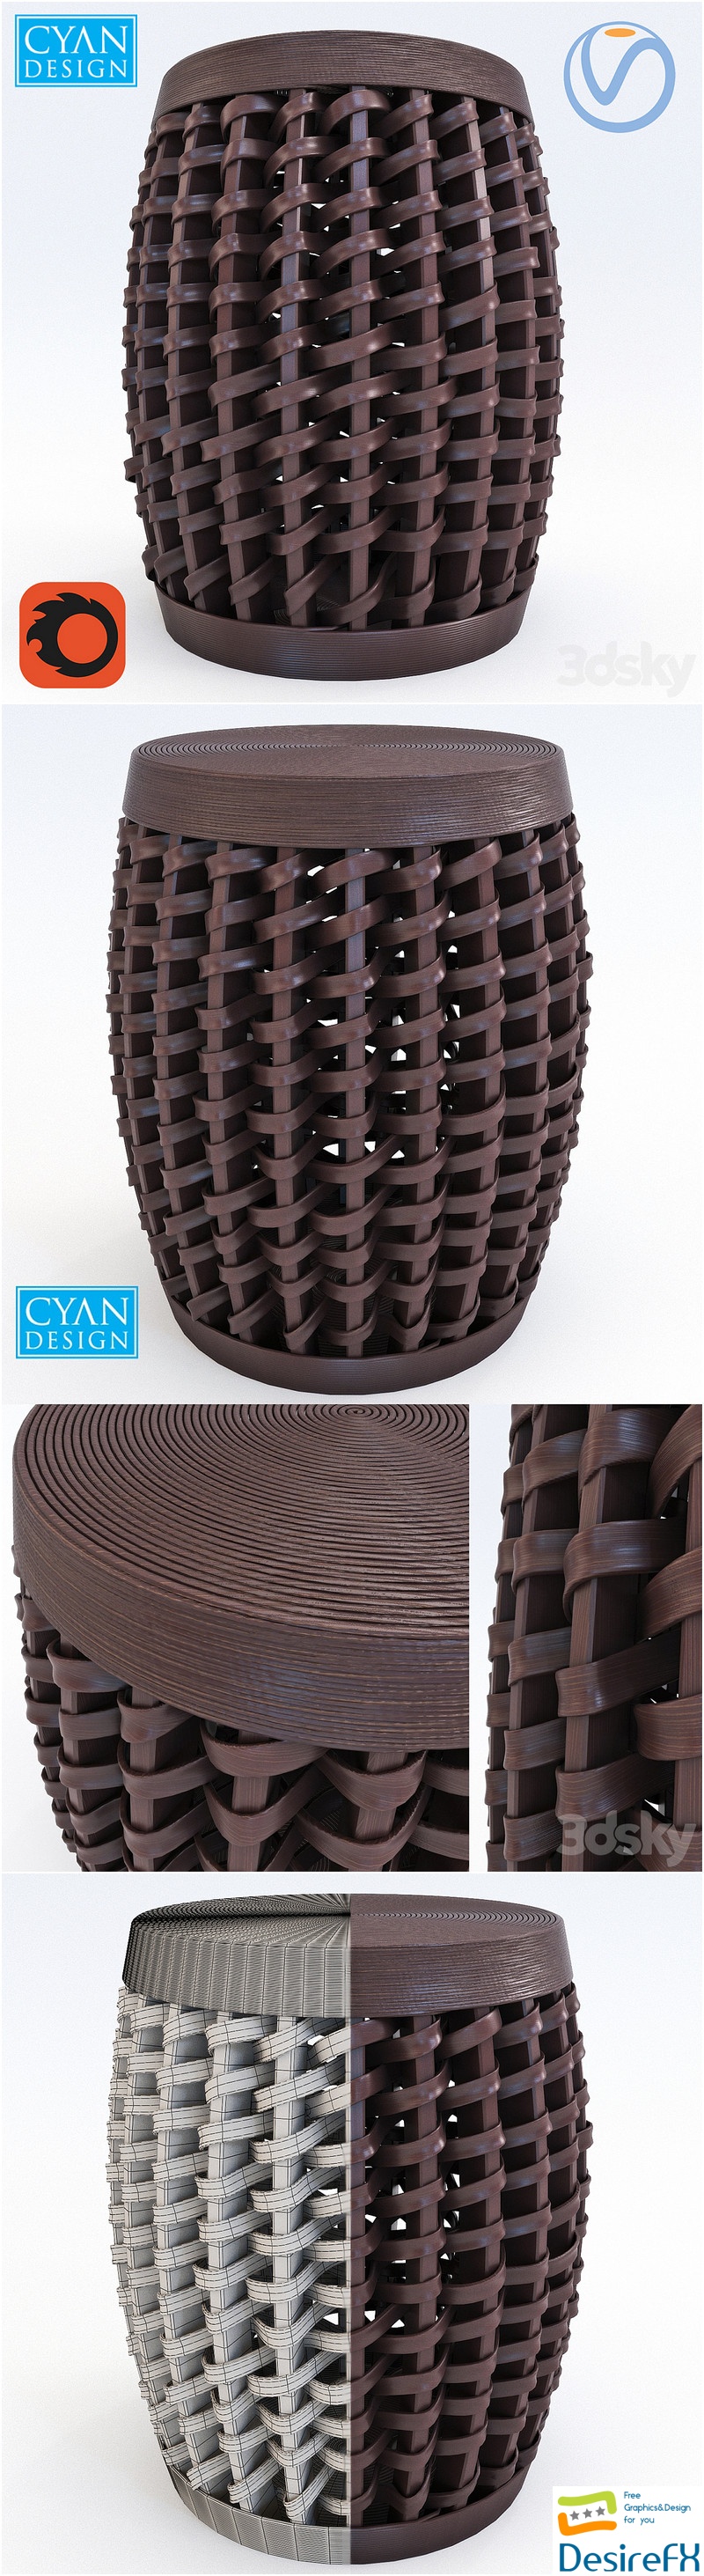 Cyan Design Woven Sienna Stool 3D Model